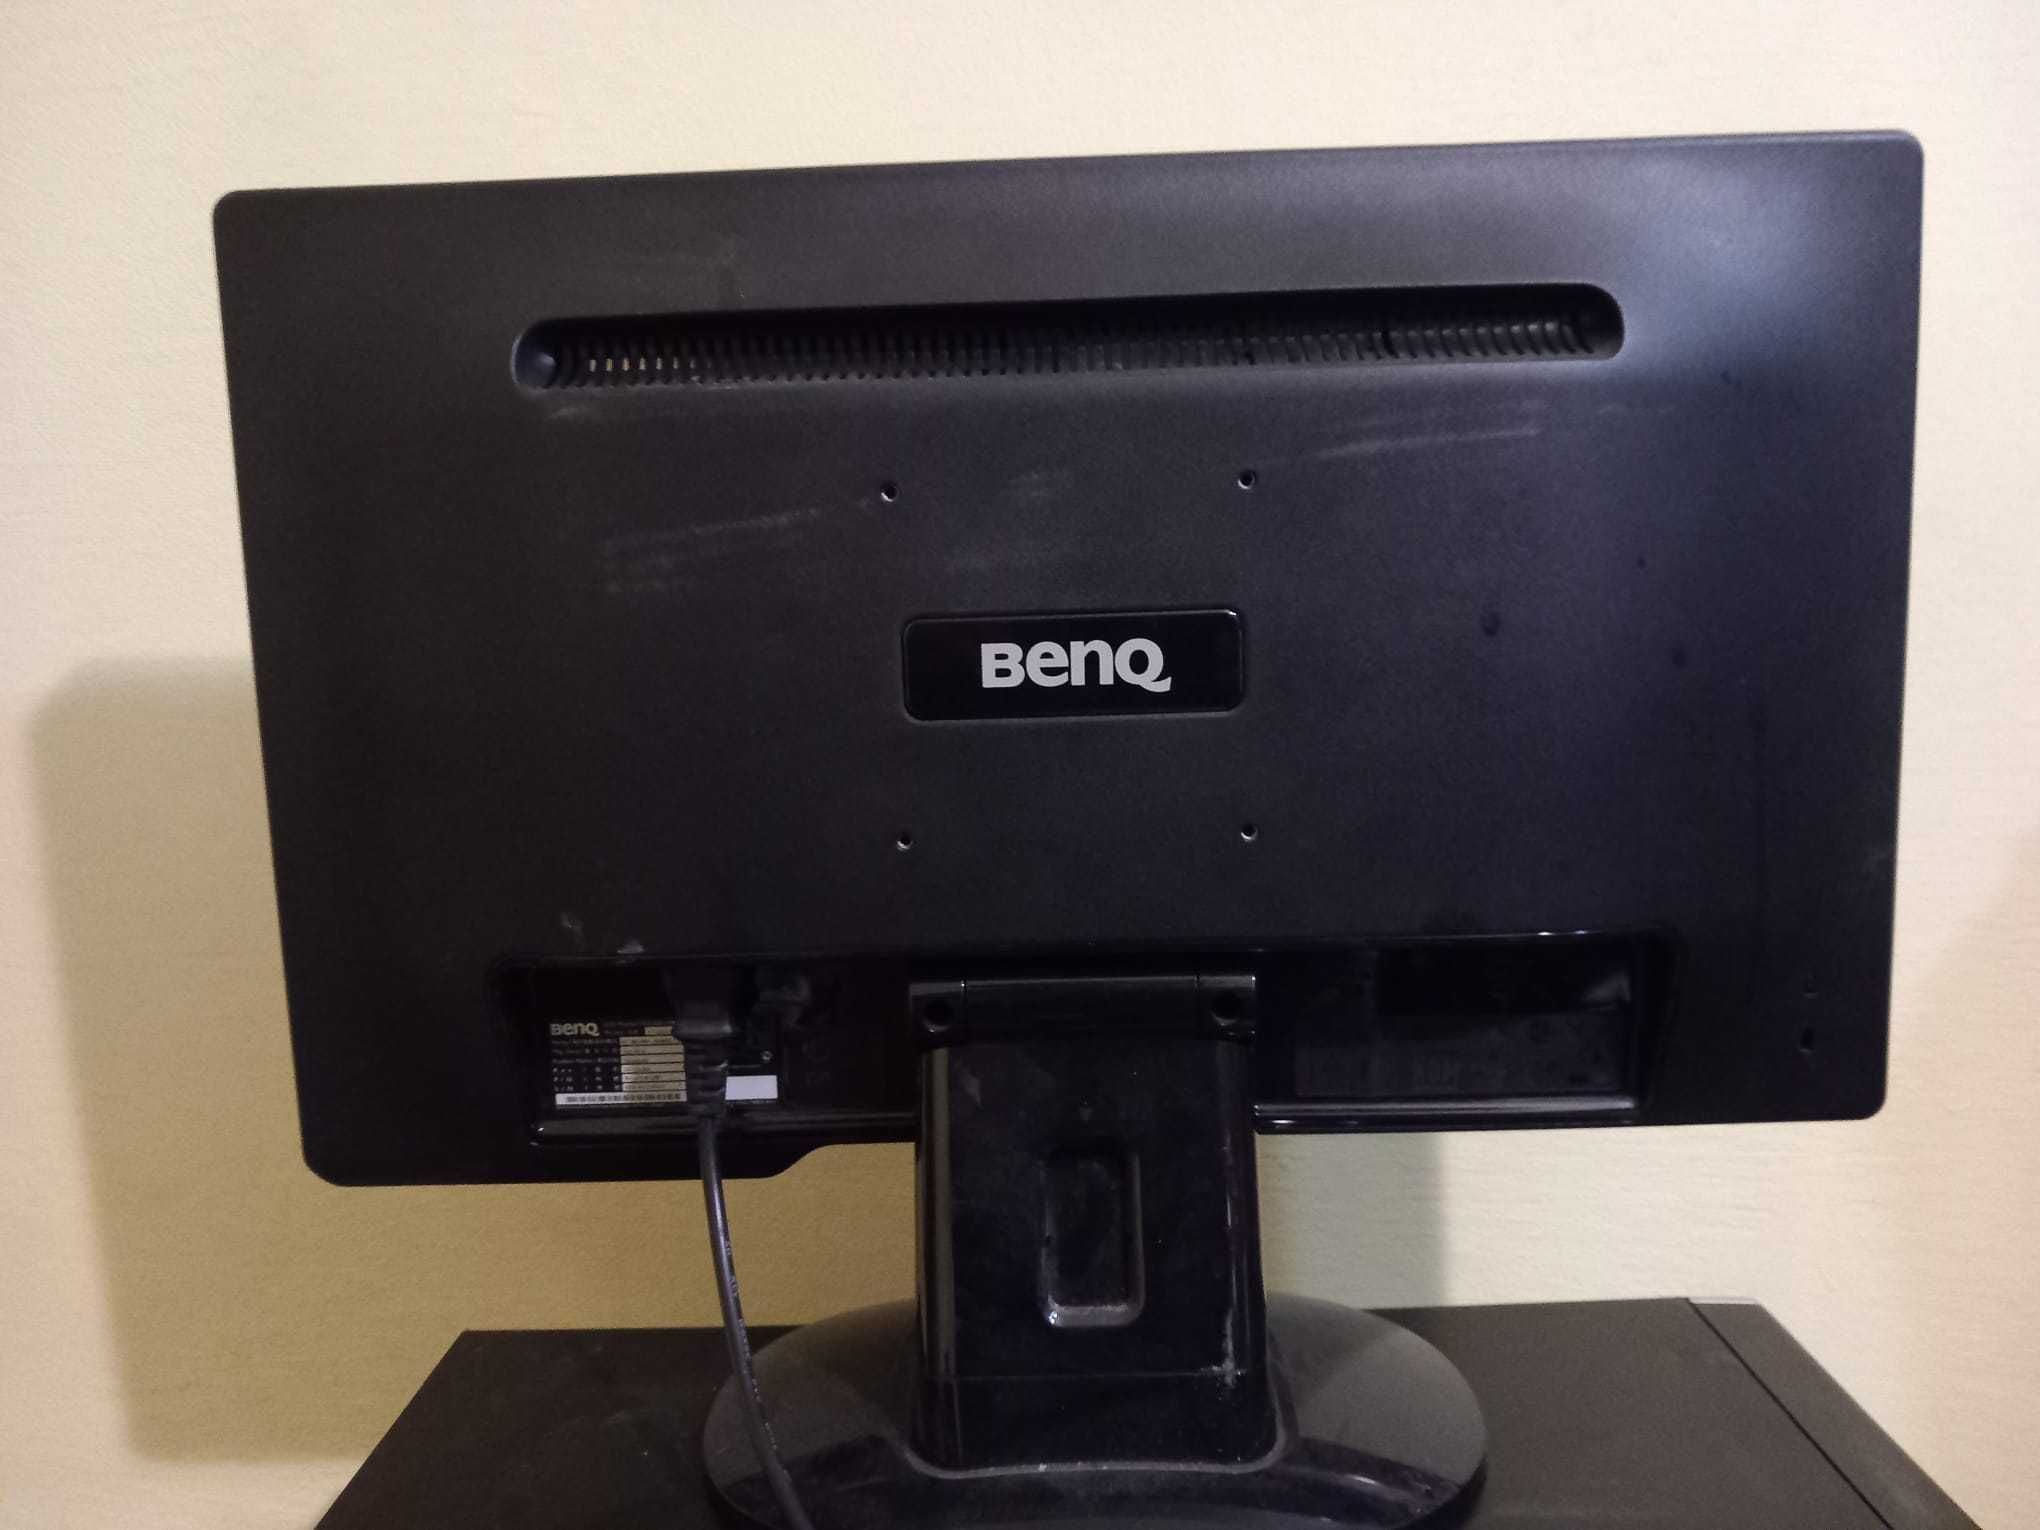 Monitor BenQ 21.5 inch full hd VGA + DVI